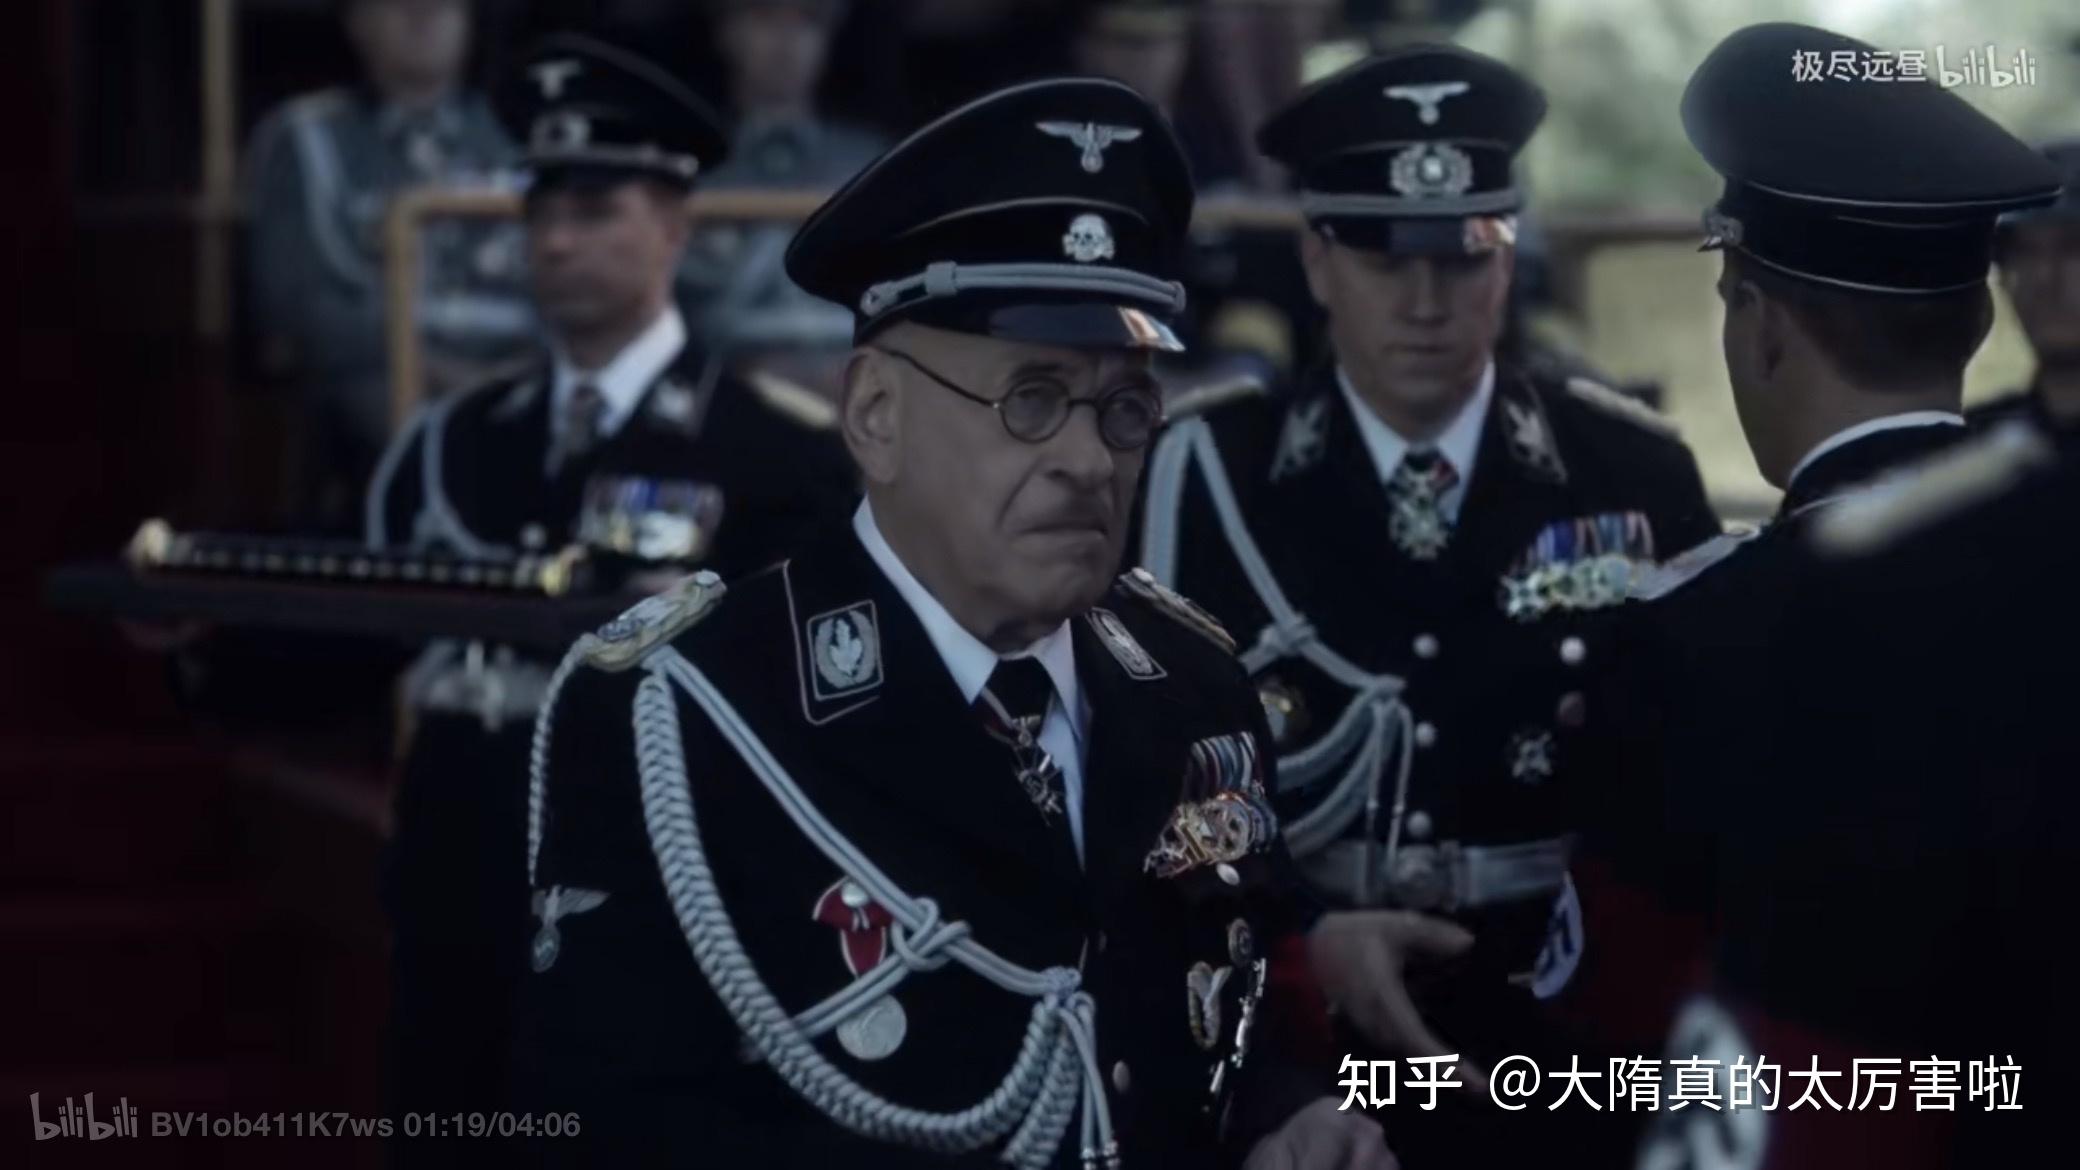 电视剧《高堡奇人》中出现的制服与勋章赏析——(2)北美纳粹帝国篇